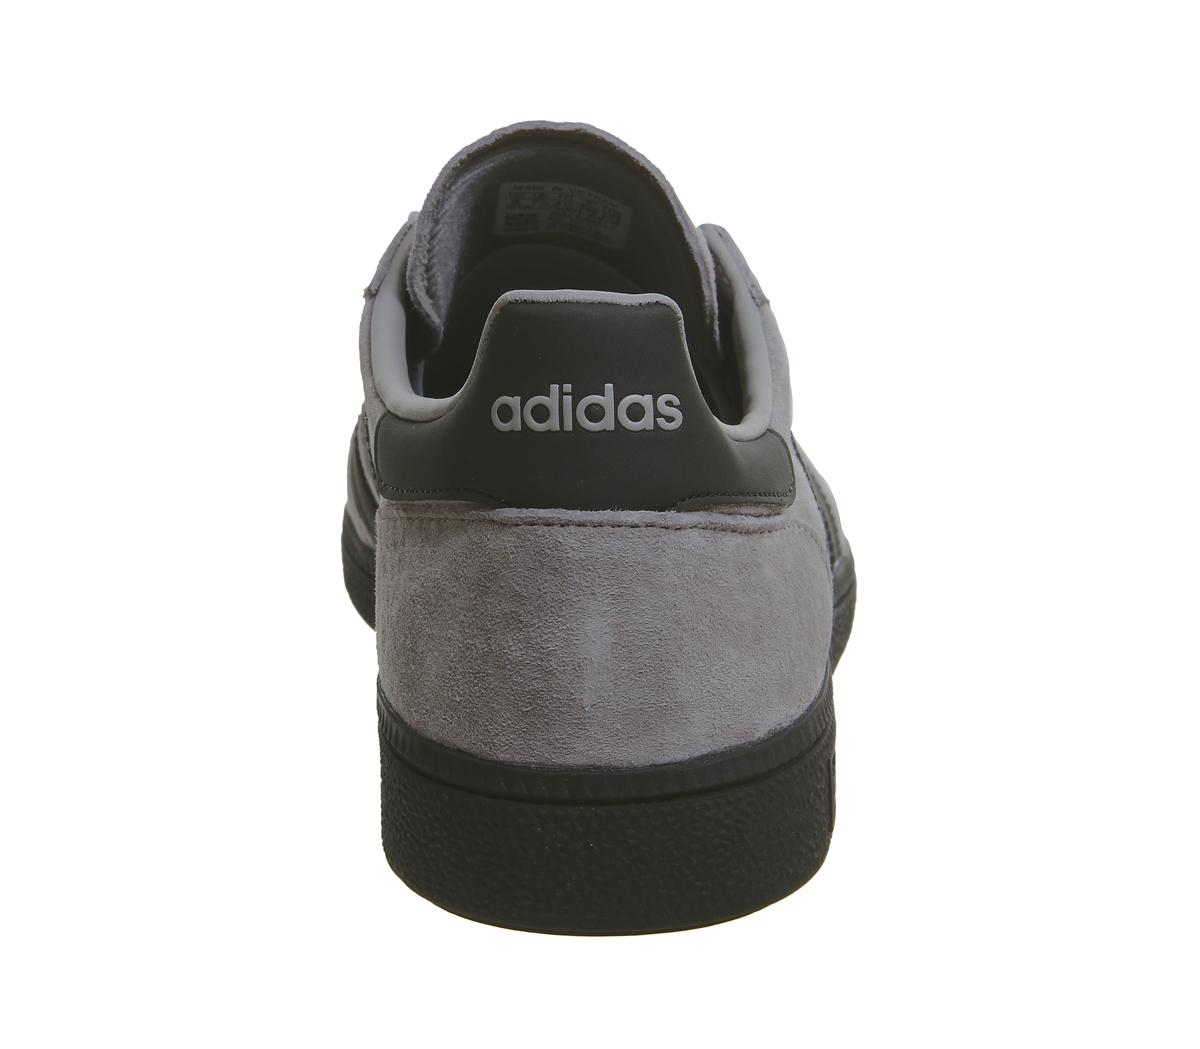 adidas handball spezial light grey